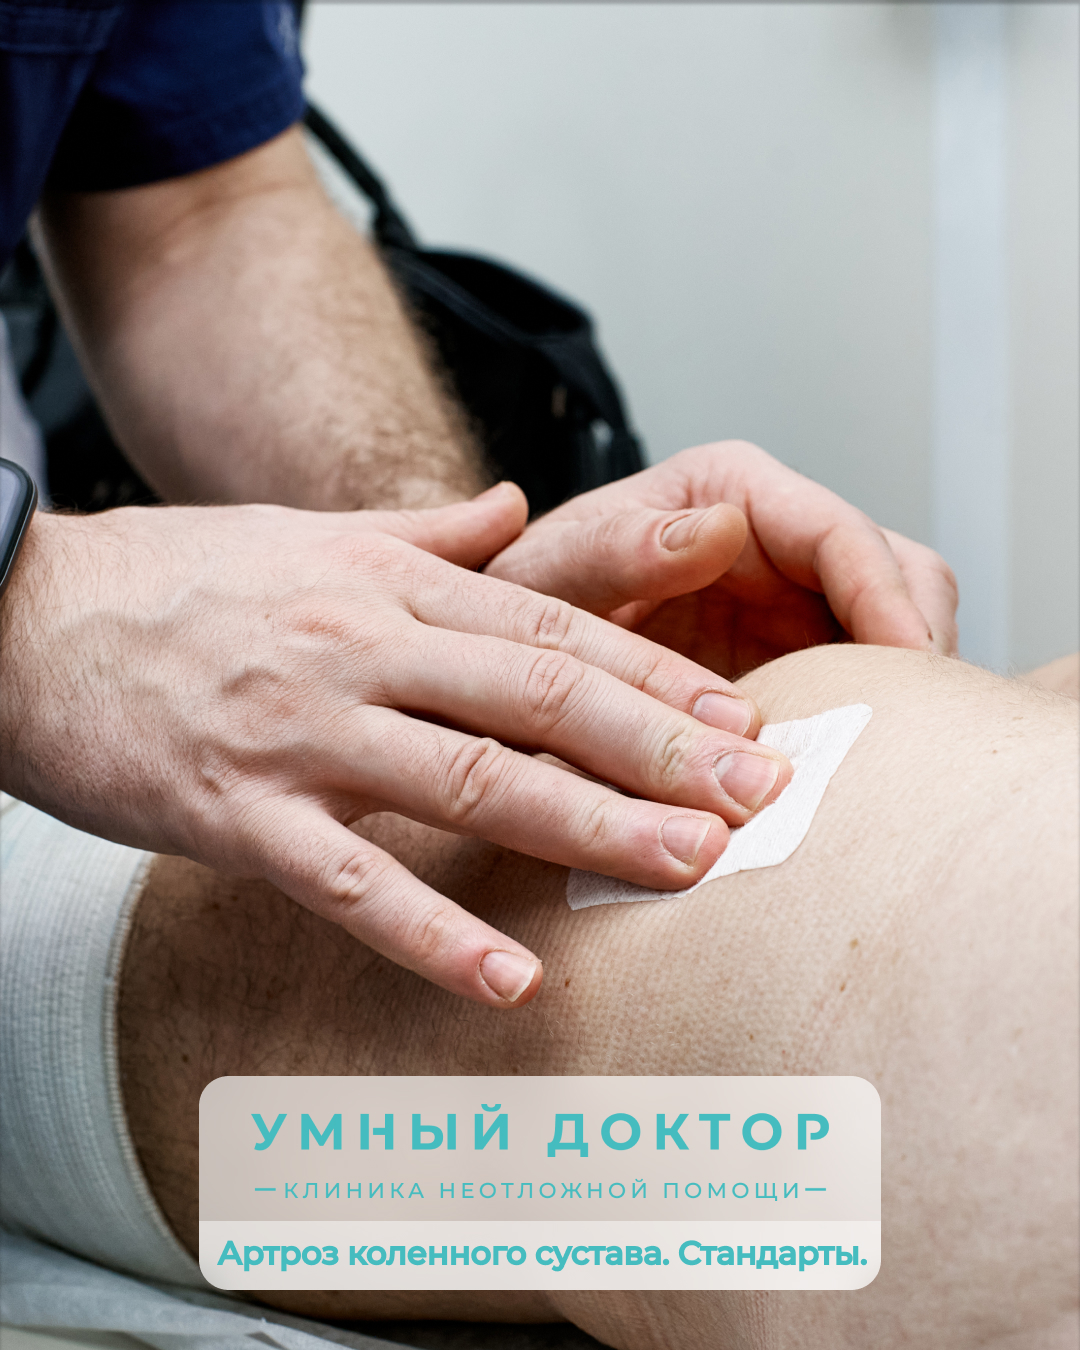 Стандарты оказания медицинской помощи при артрозе коленного сустава.